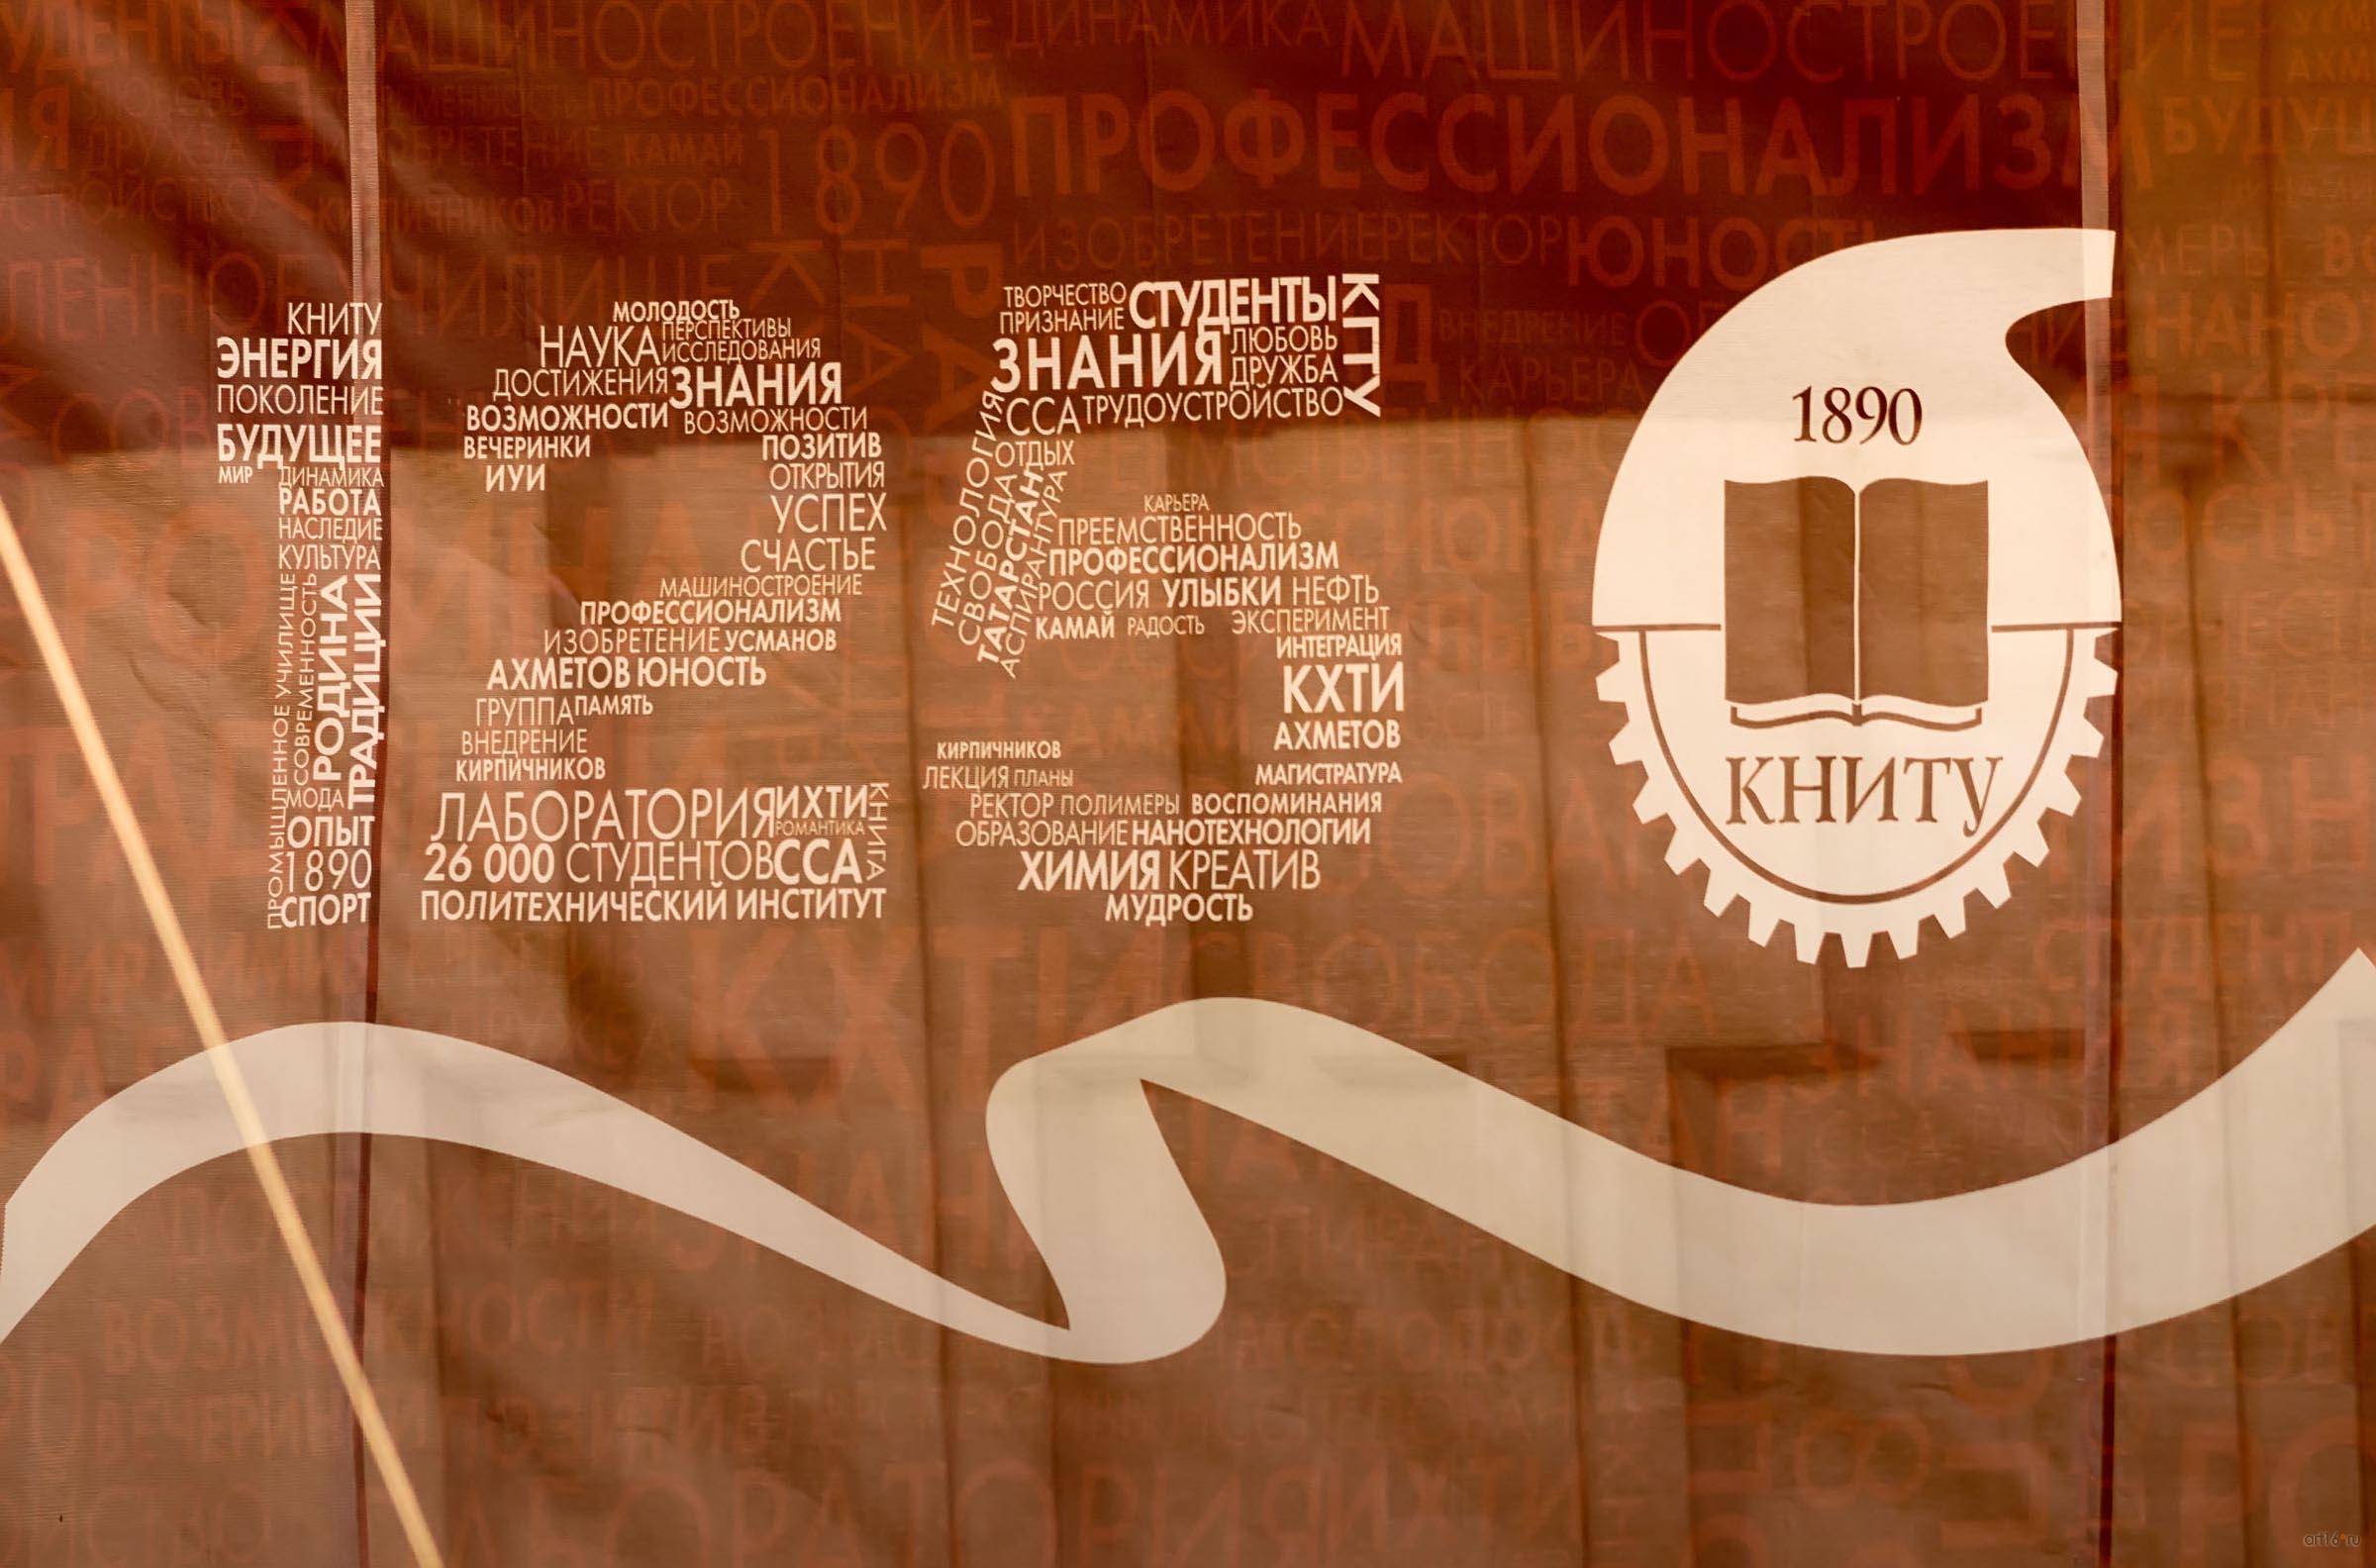 ::Модный показ к 125-летию КНИТУ. 26.06.2015